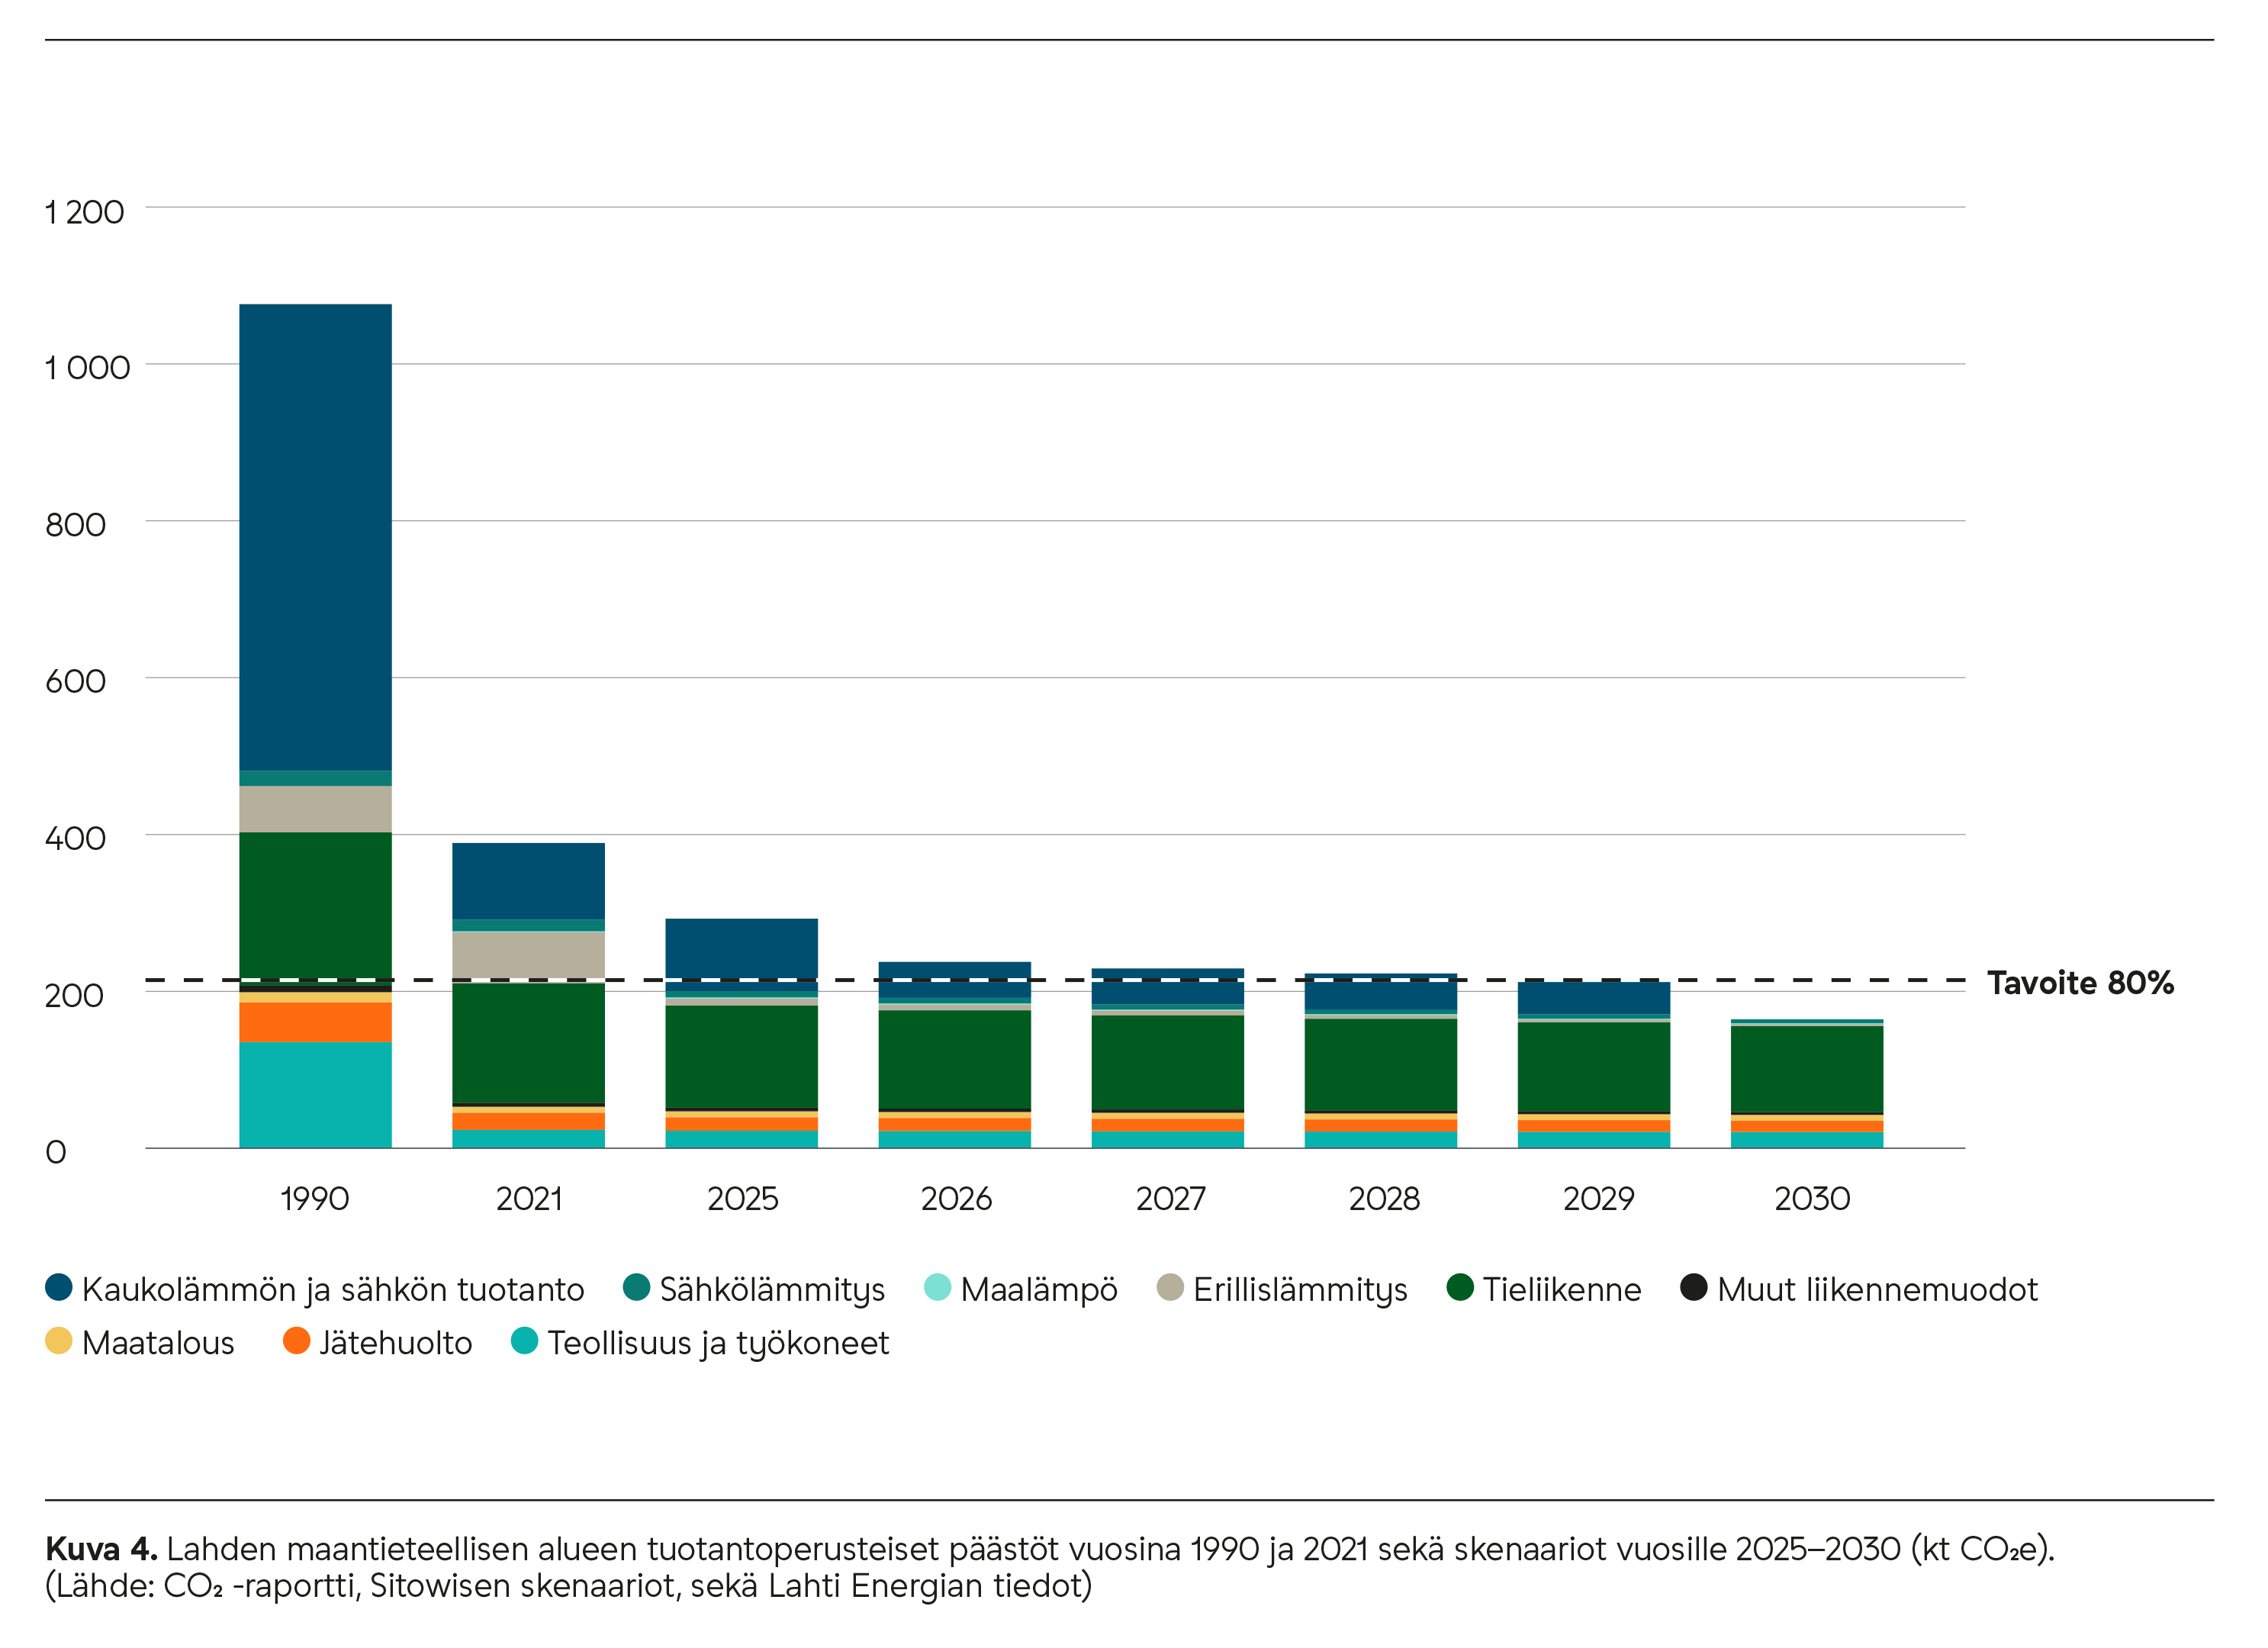 Lahden maantieteellisen alueen tuotantoperusteiset päästöt vuosina 1990 ja 2021 sekä skenaariot vuosille 2025–2030.